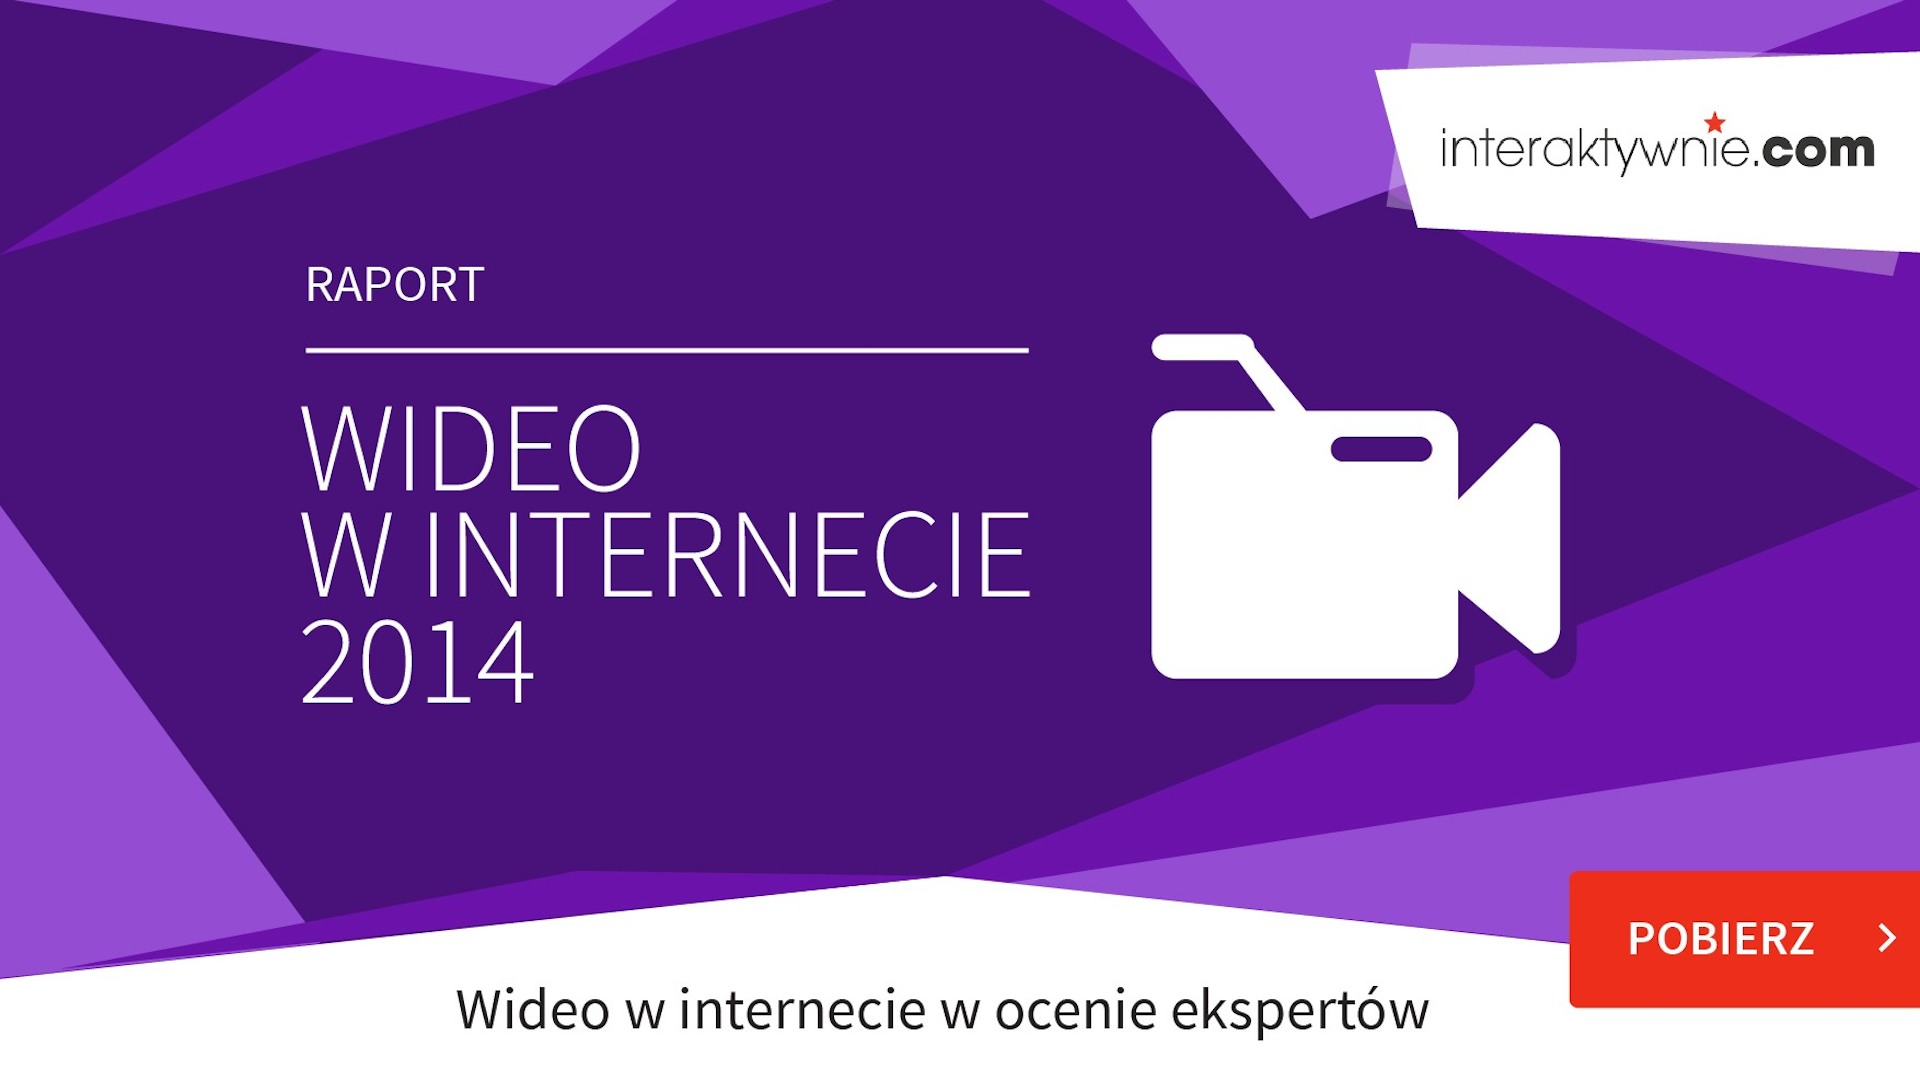 Polskie reklamy wideo są słabe, ale wydajemy na nie coraz więcej Wideo w internecie 2014 mediaruninteraktywnie